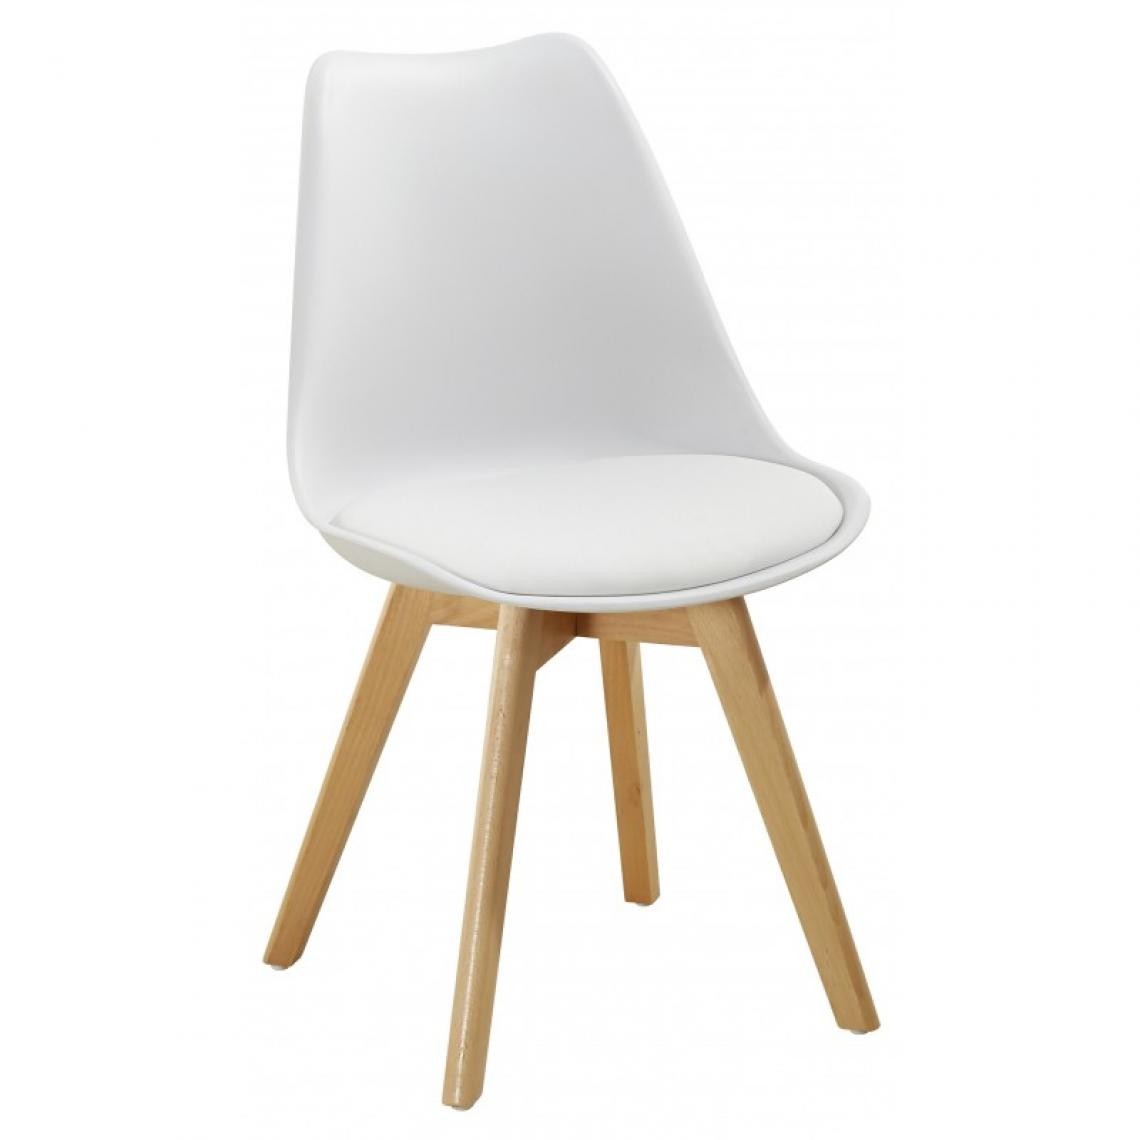 Webmarketpoint - Chaise moderne en polypropylène et bois Soft line blanc - Chaises